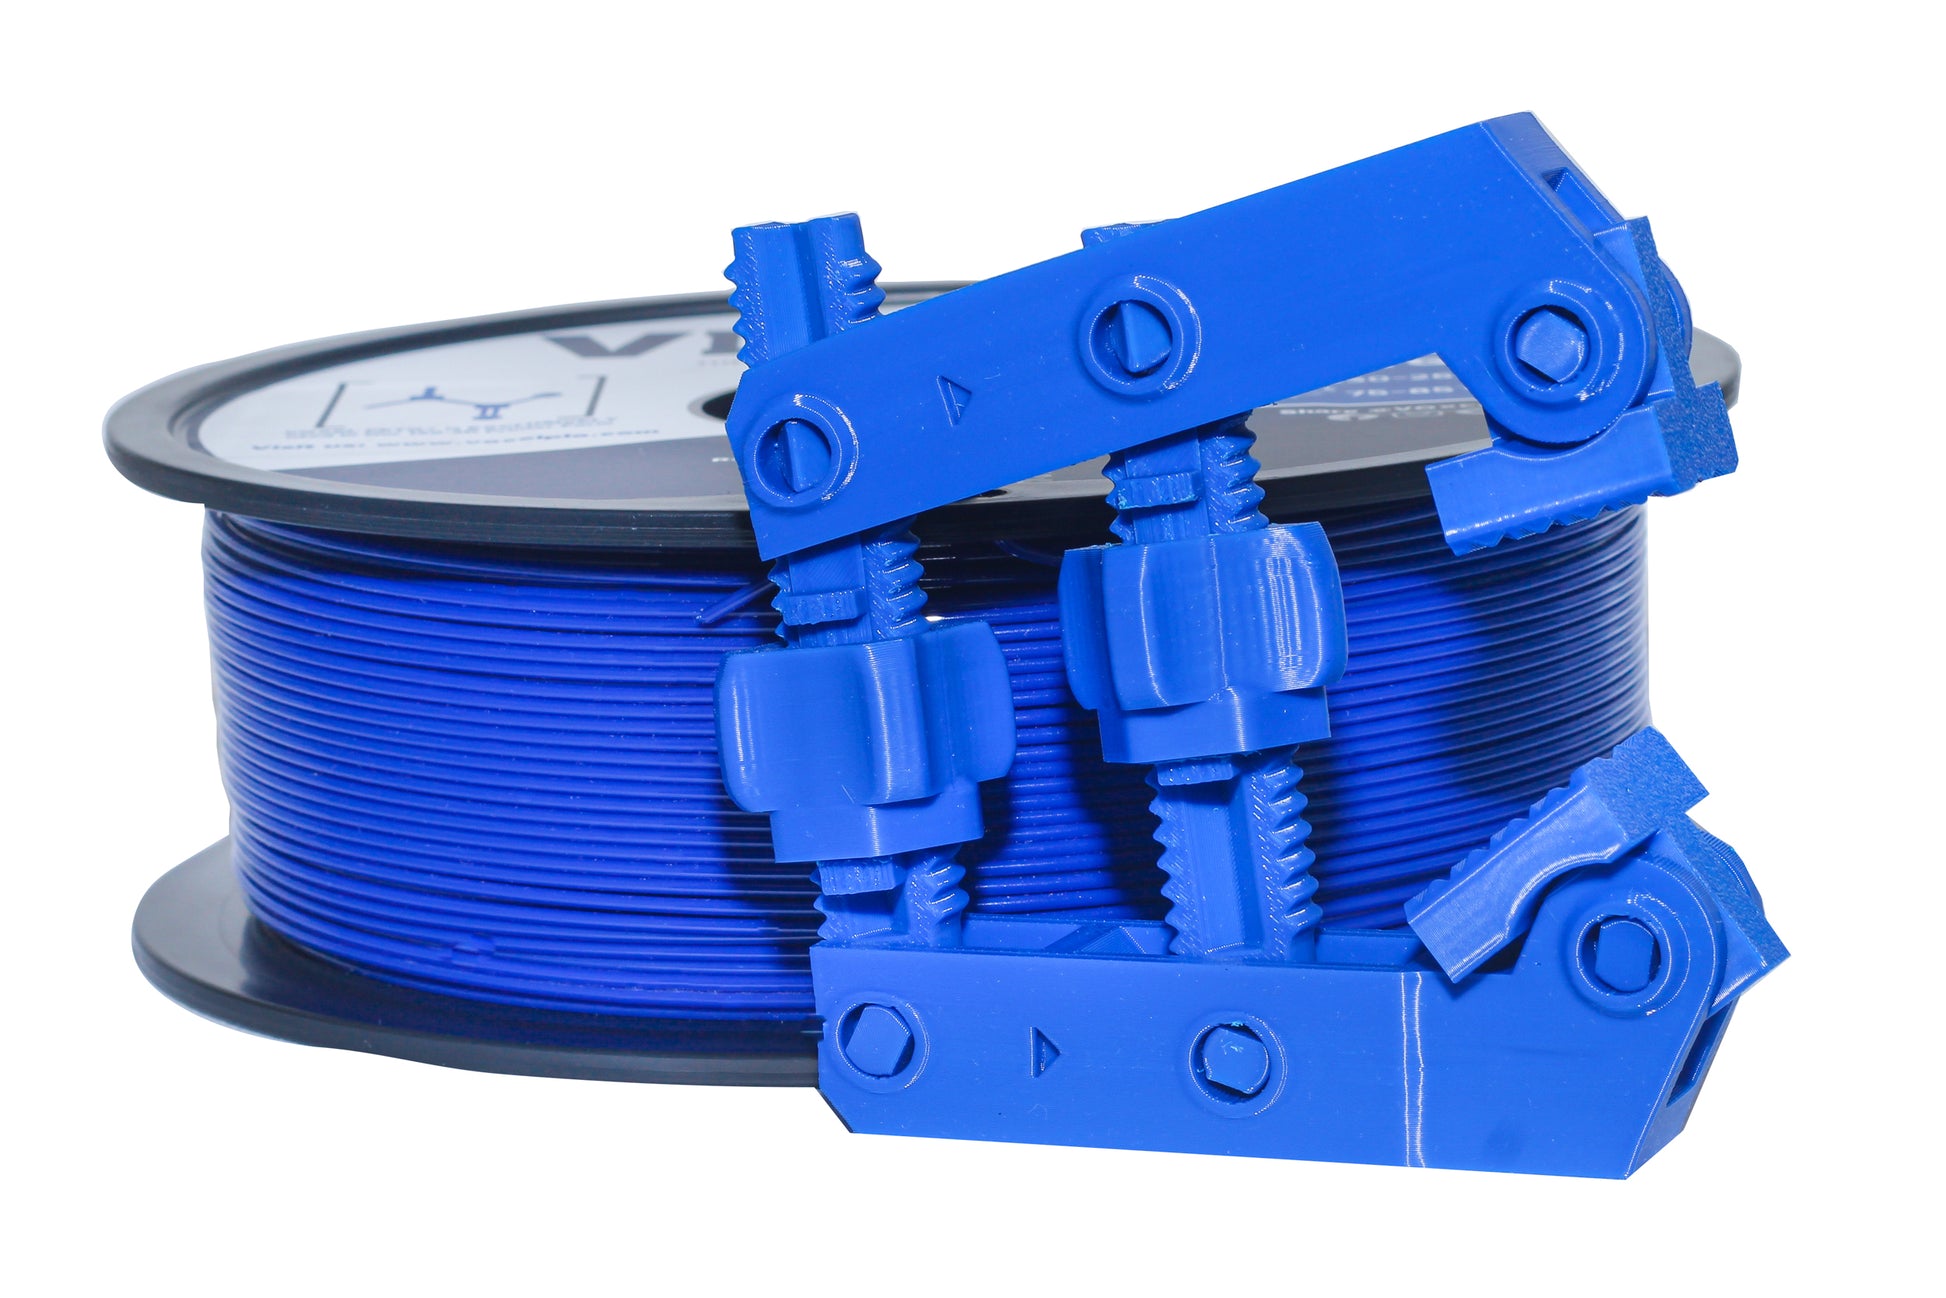 VOXELPETG PETG Plus Blue Filament - $16.99 1.75mm for FDM 3D Printer –  VOXELPLA